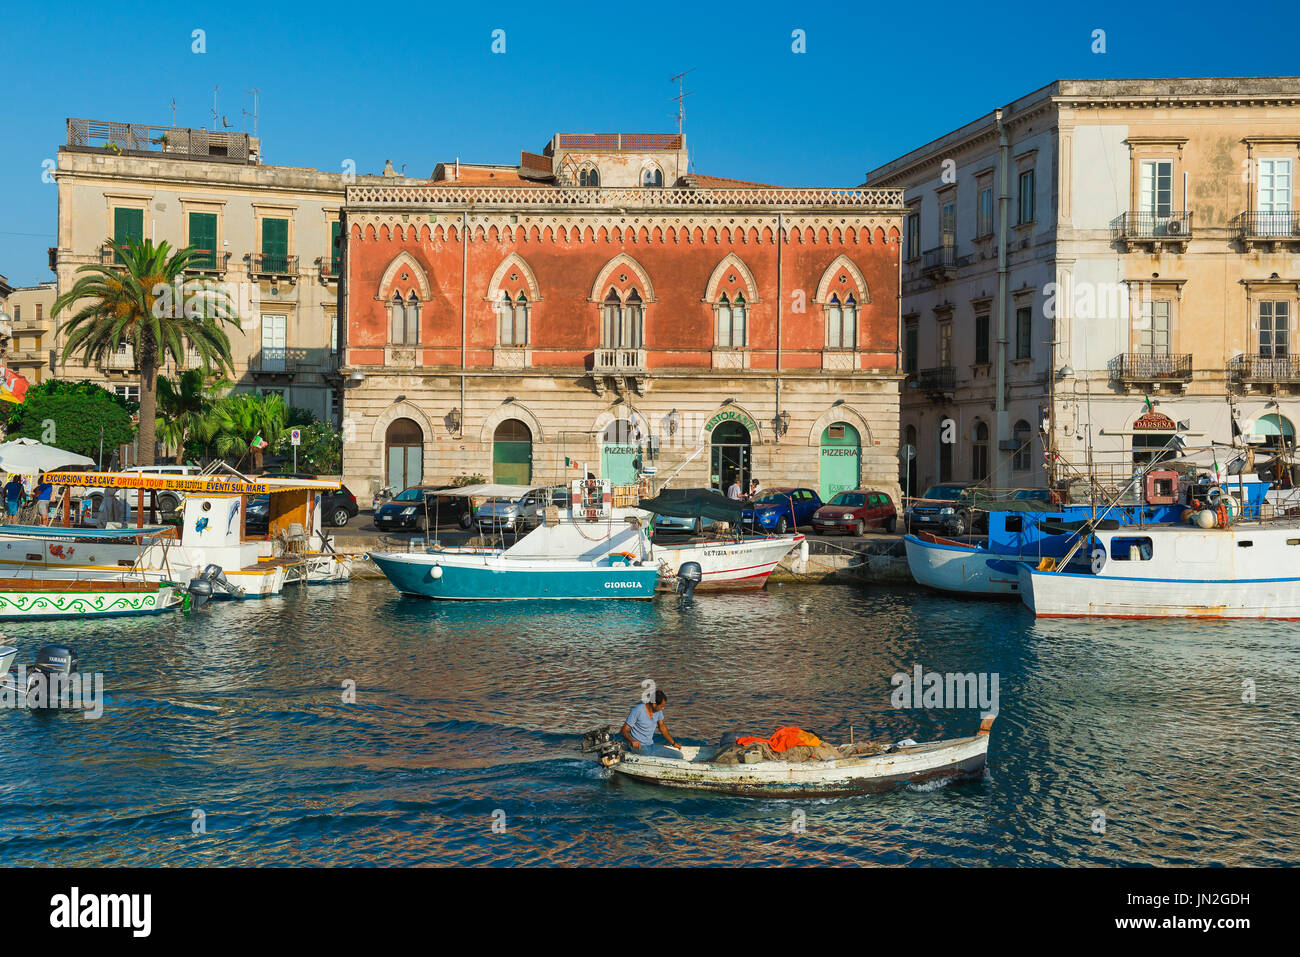 Ville de Sicile, vue d'un pêcheur qui dirige son bateau dans le pittoresque canal de Darsena entre le port de Syracuse et l'île historique d'Ortigia, la Sicile Banque D'Images